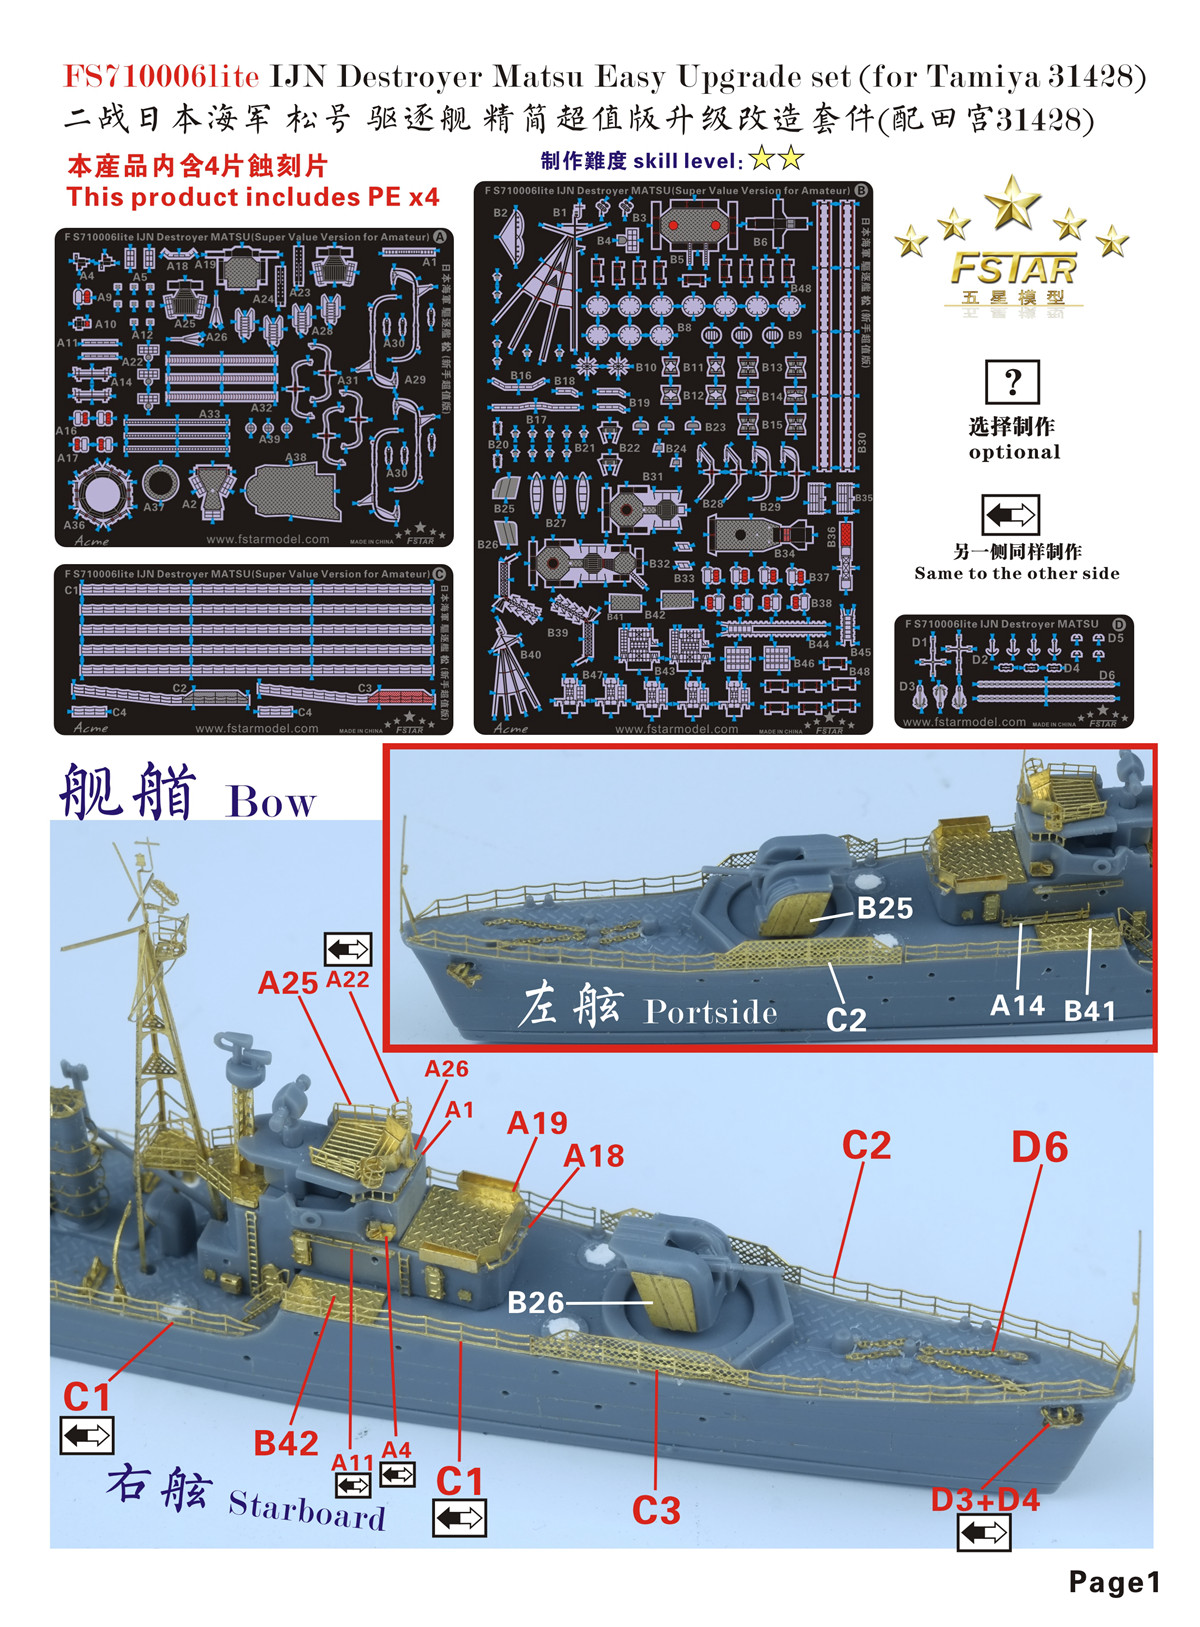 1/700 二战日本海军松号驱逐舰精简版升级改造套件(配田宫31428) - 点击图像关闭